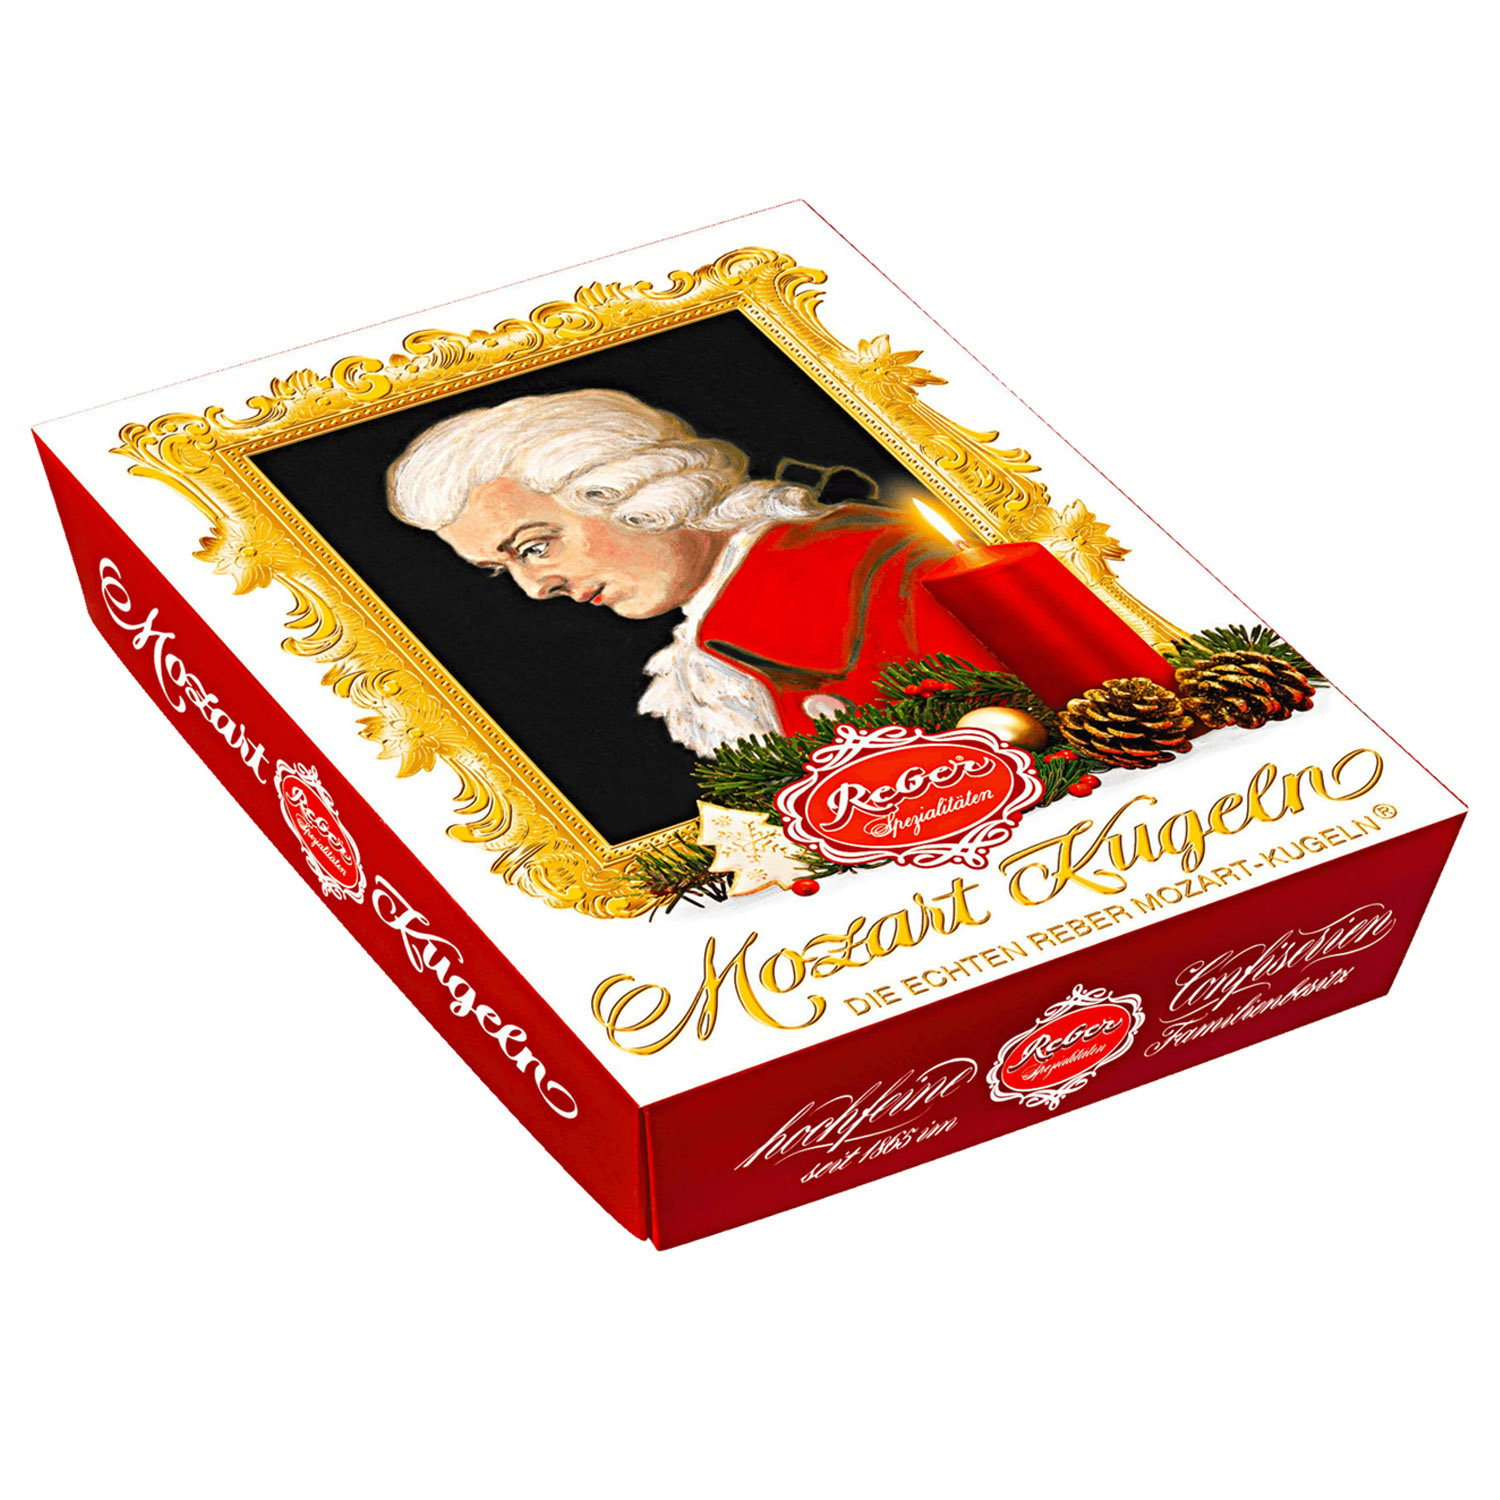 Цукерки шоколадні Reber Mozart Kugeln, новорічні, 120 г - фото 1